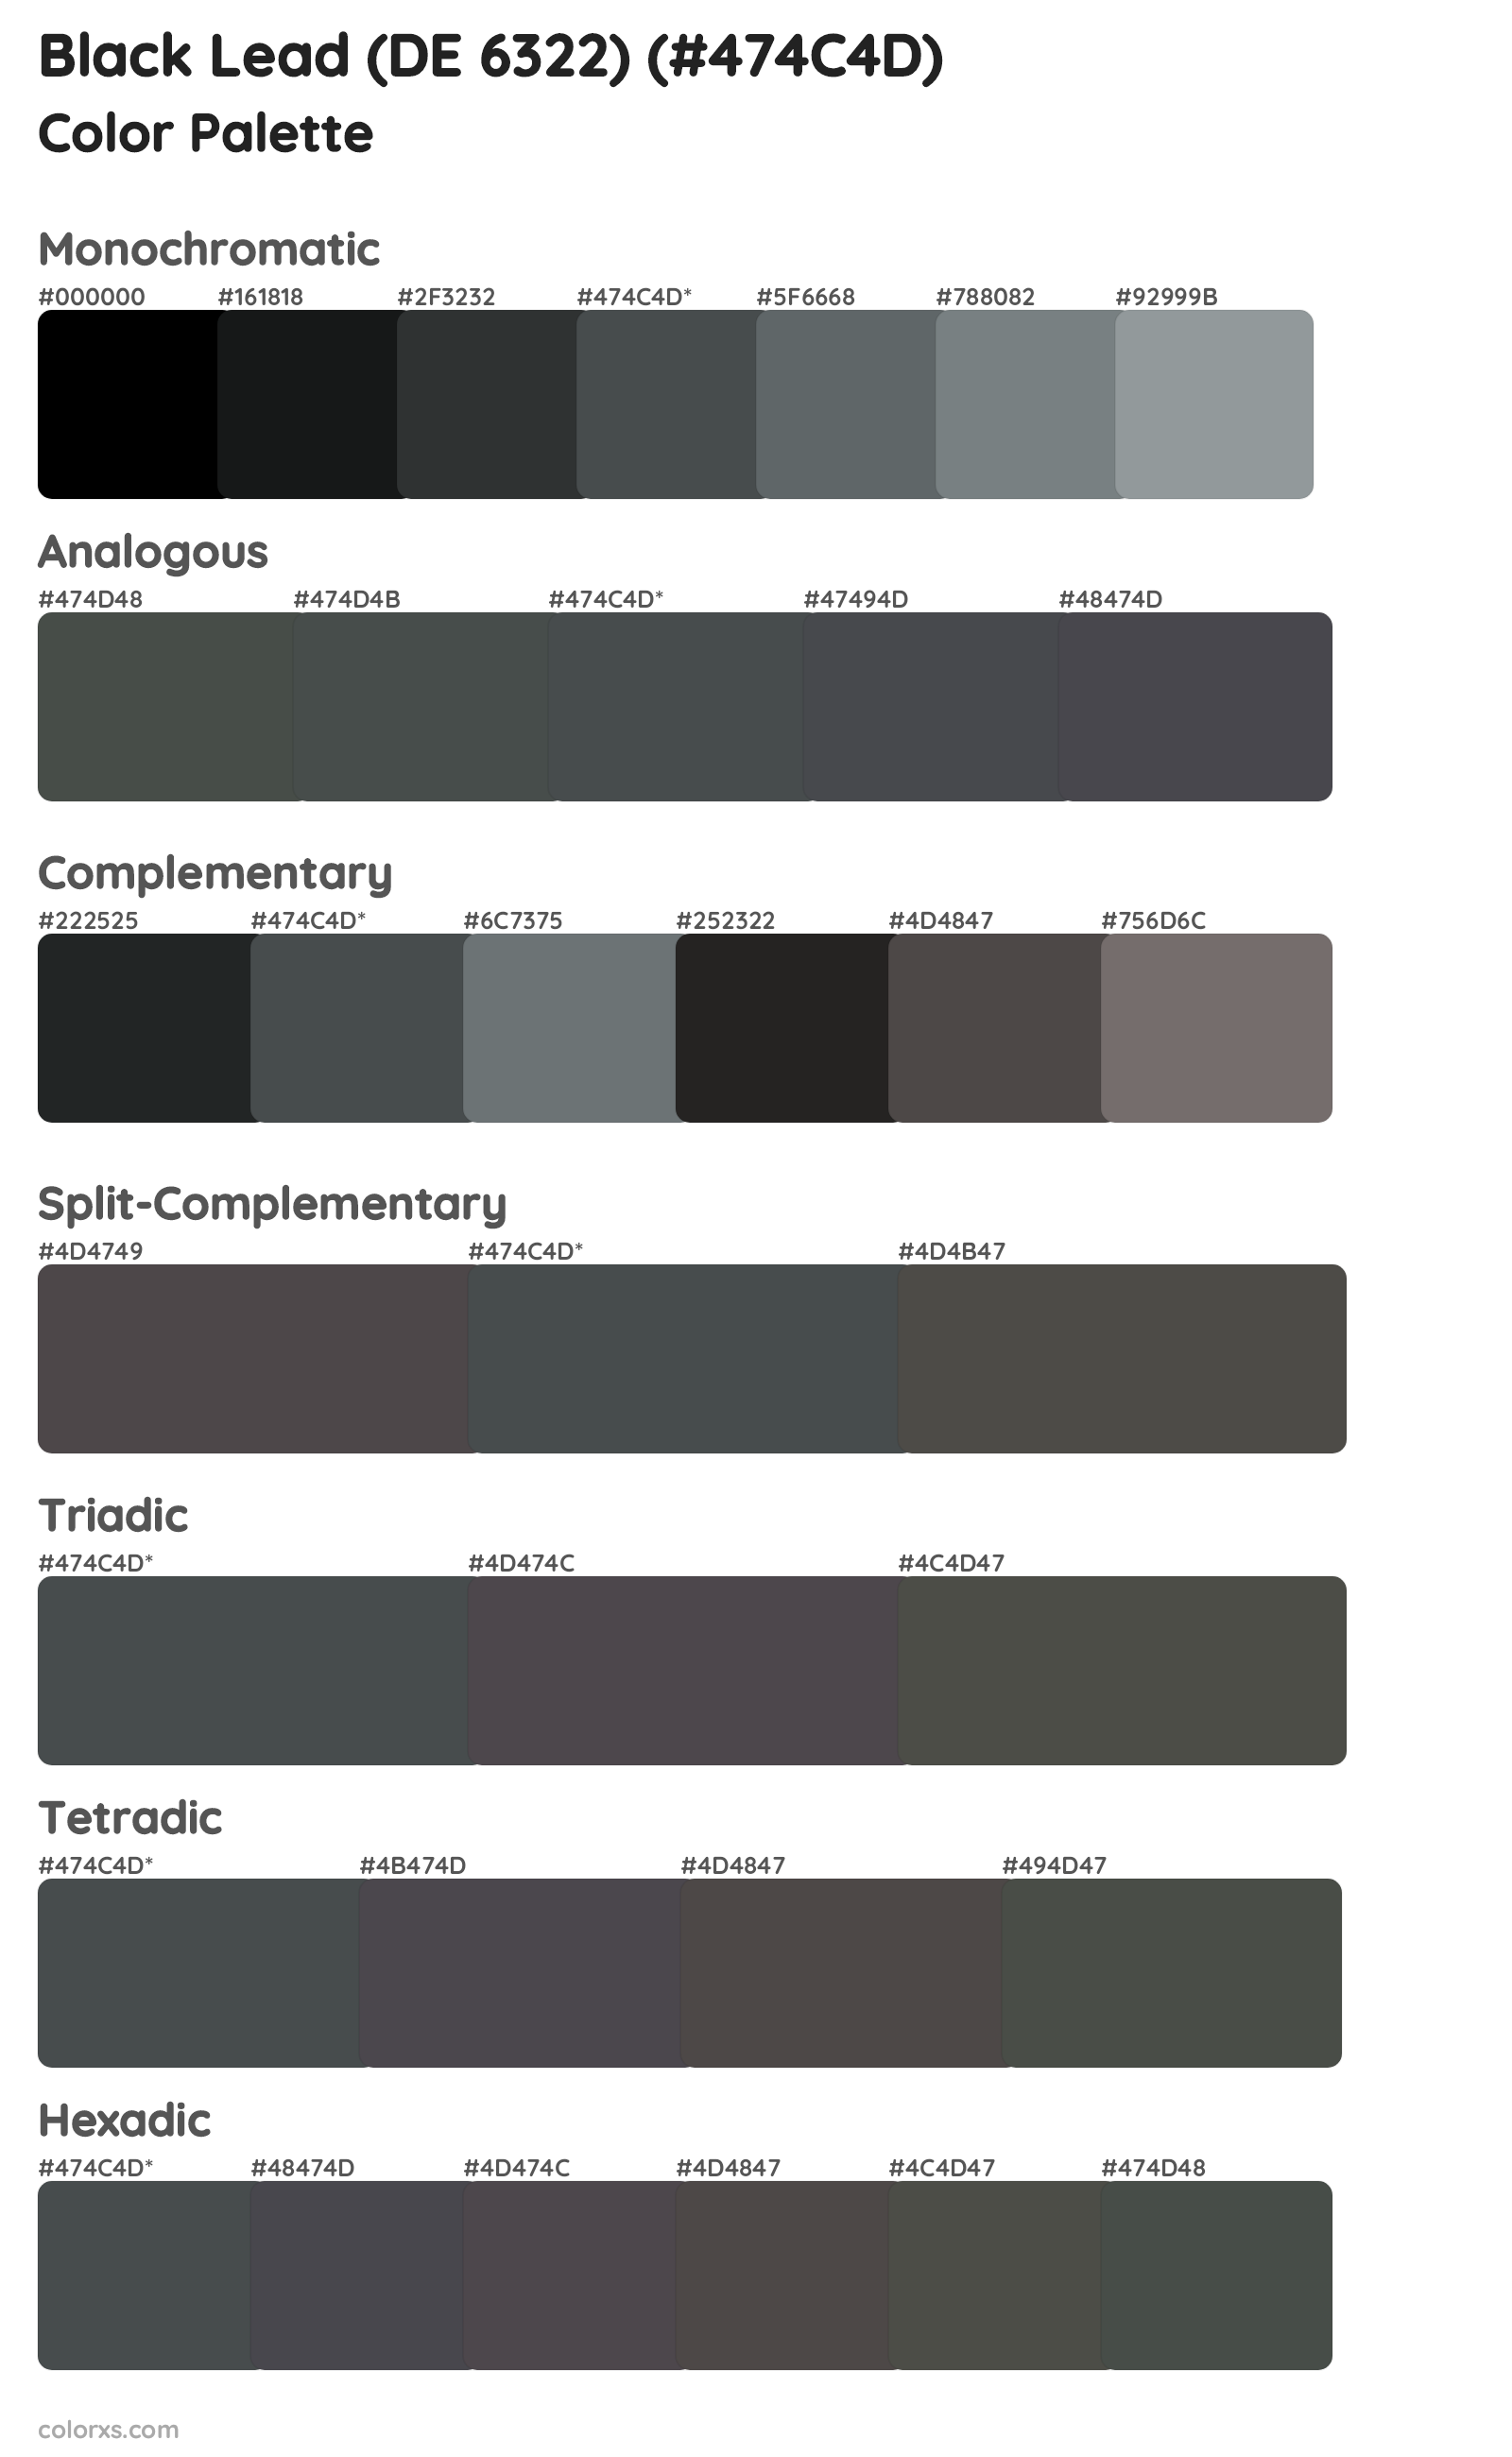 Black Lead (DE 6322) Color Scheme Palettes